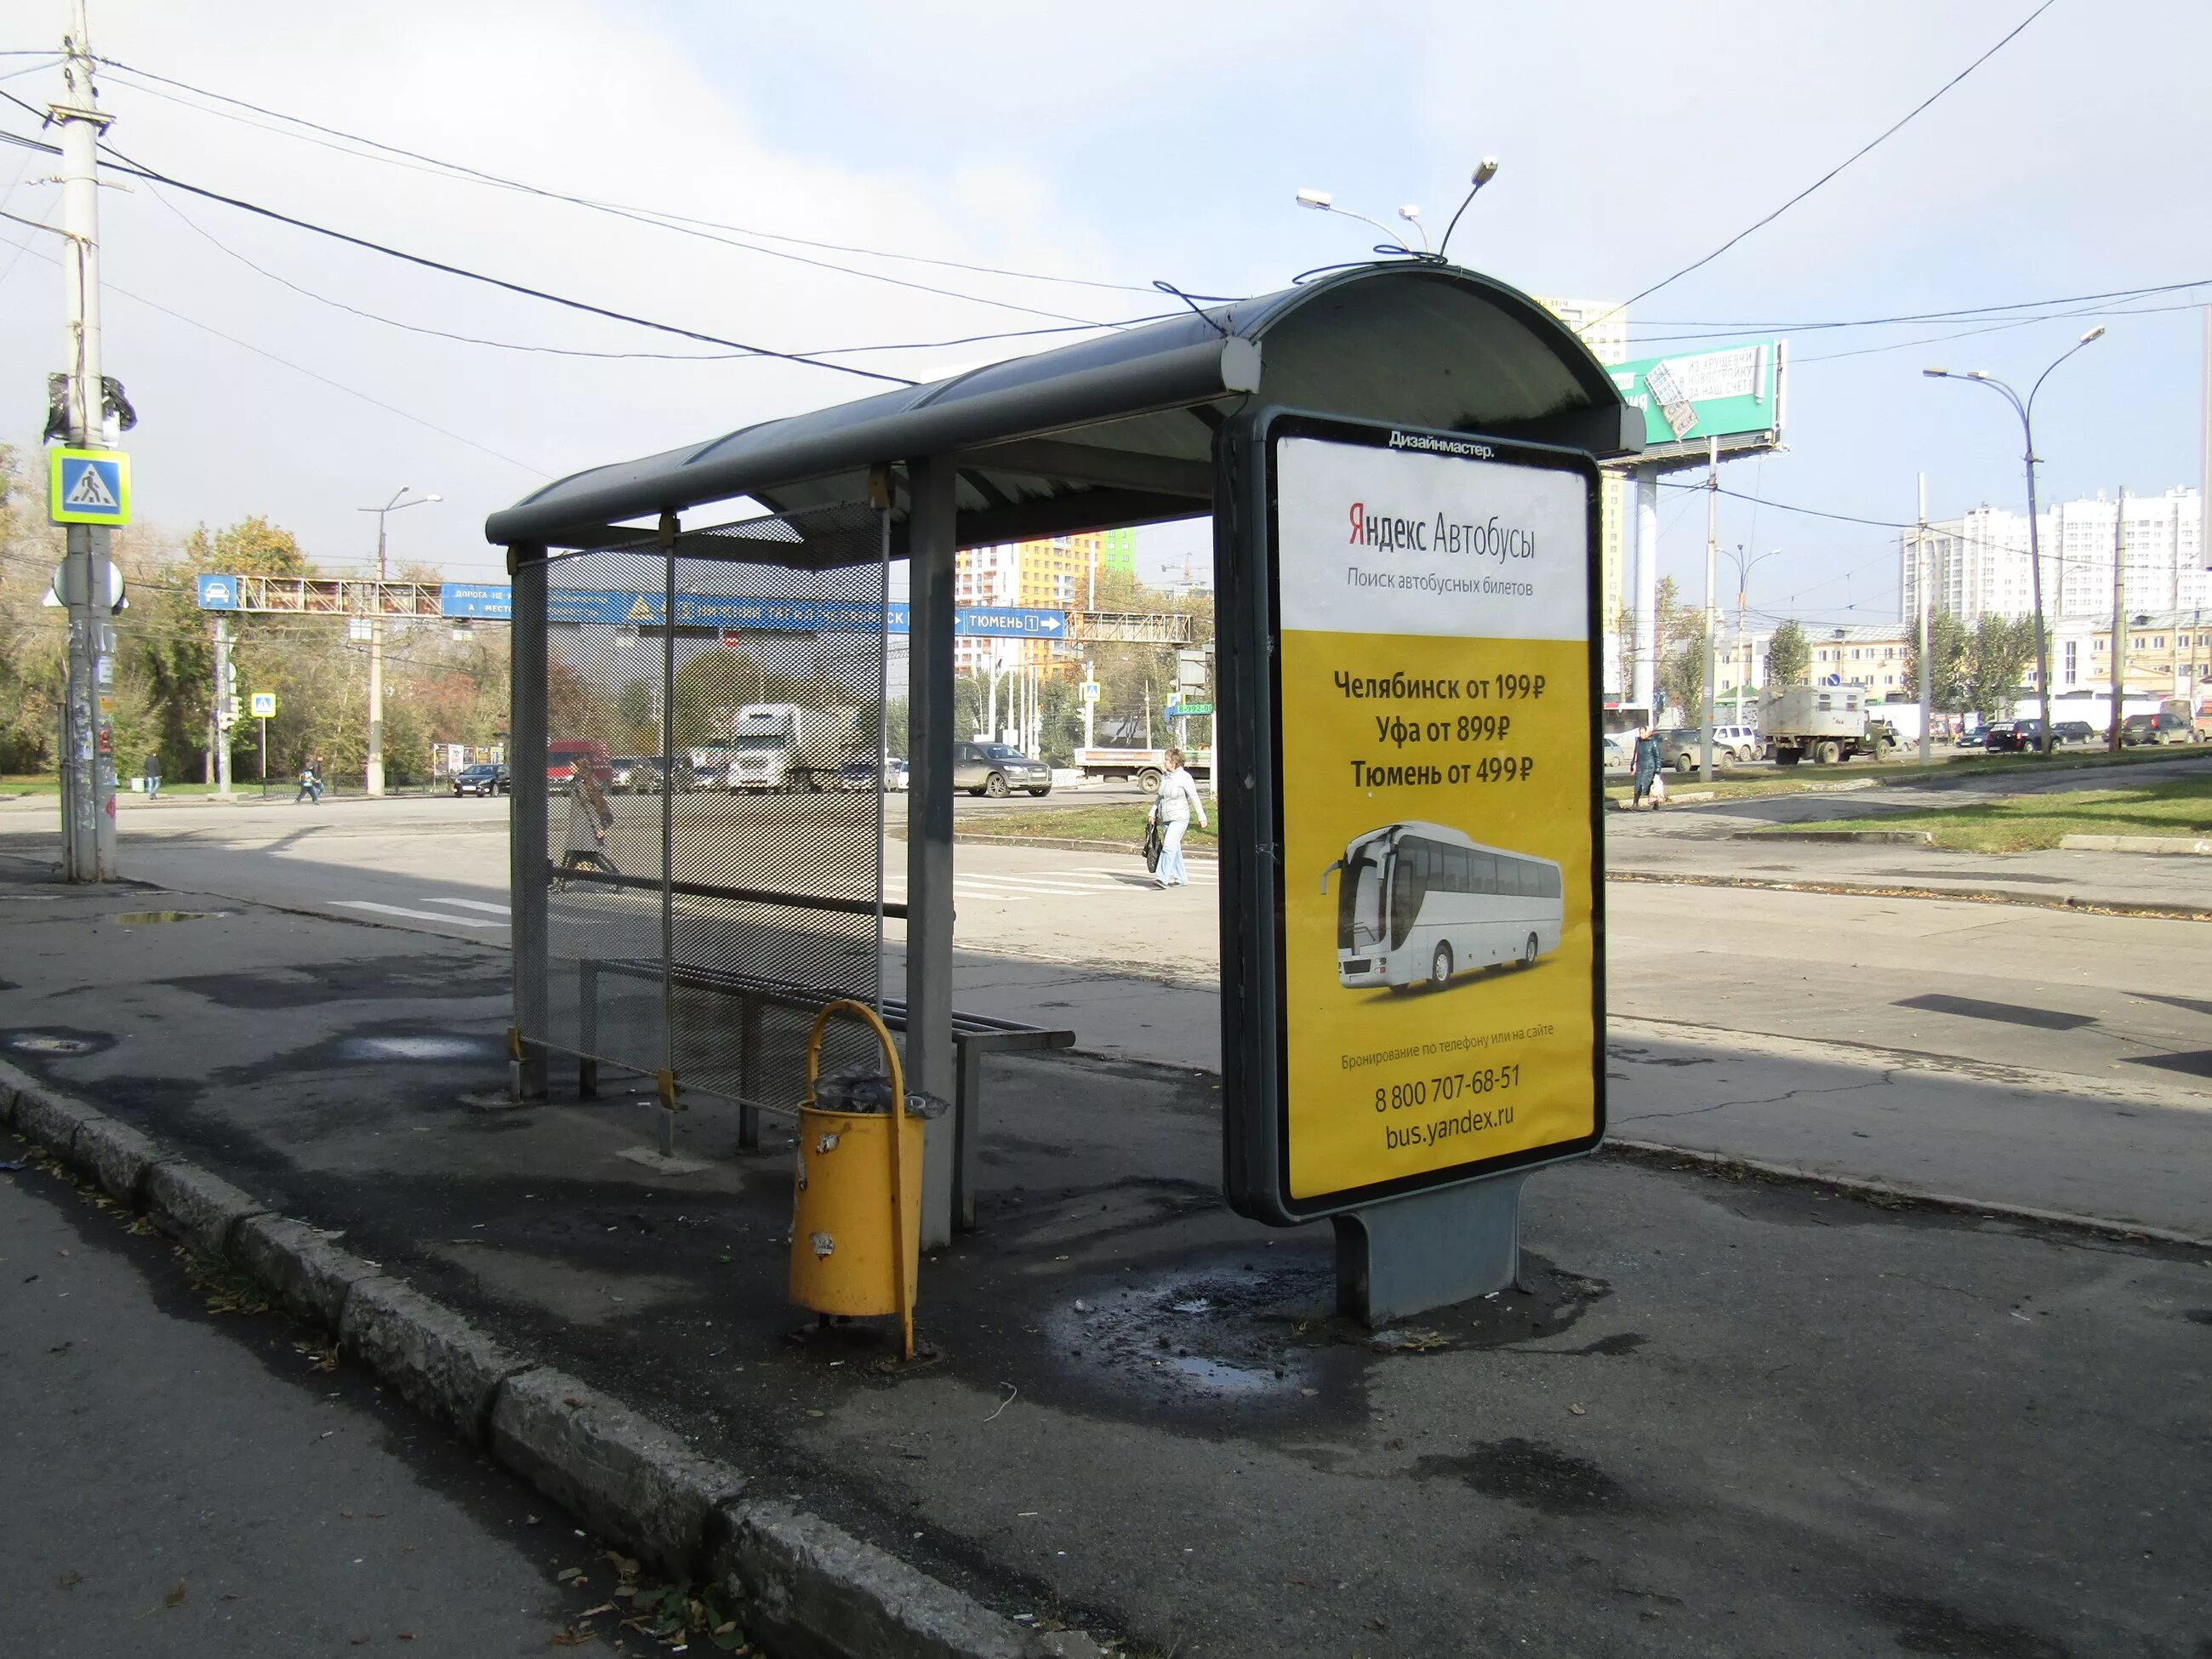 Названия остановок транспорта. Автобусная остановка. Название остановок общественного транспорта. Название автобусной остановки. Остановки общественного транспорта Екатеринбург.